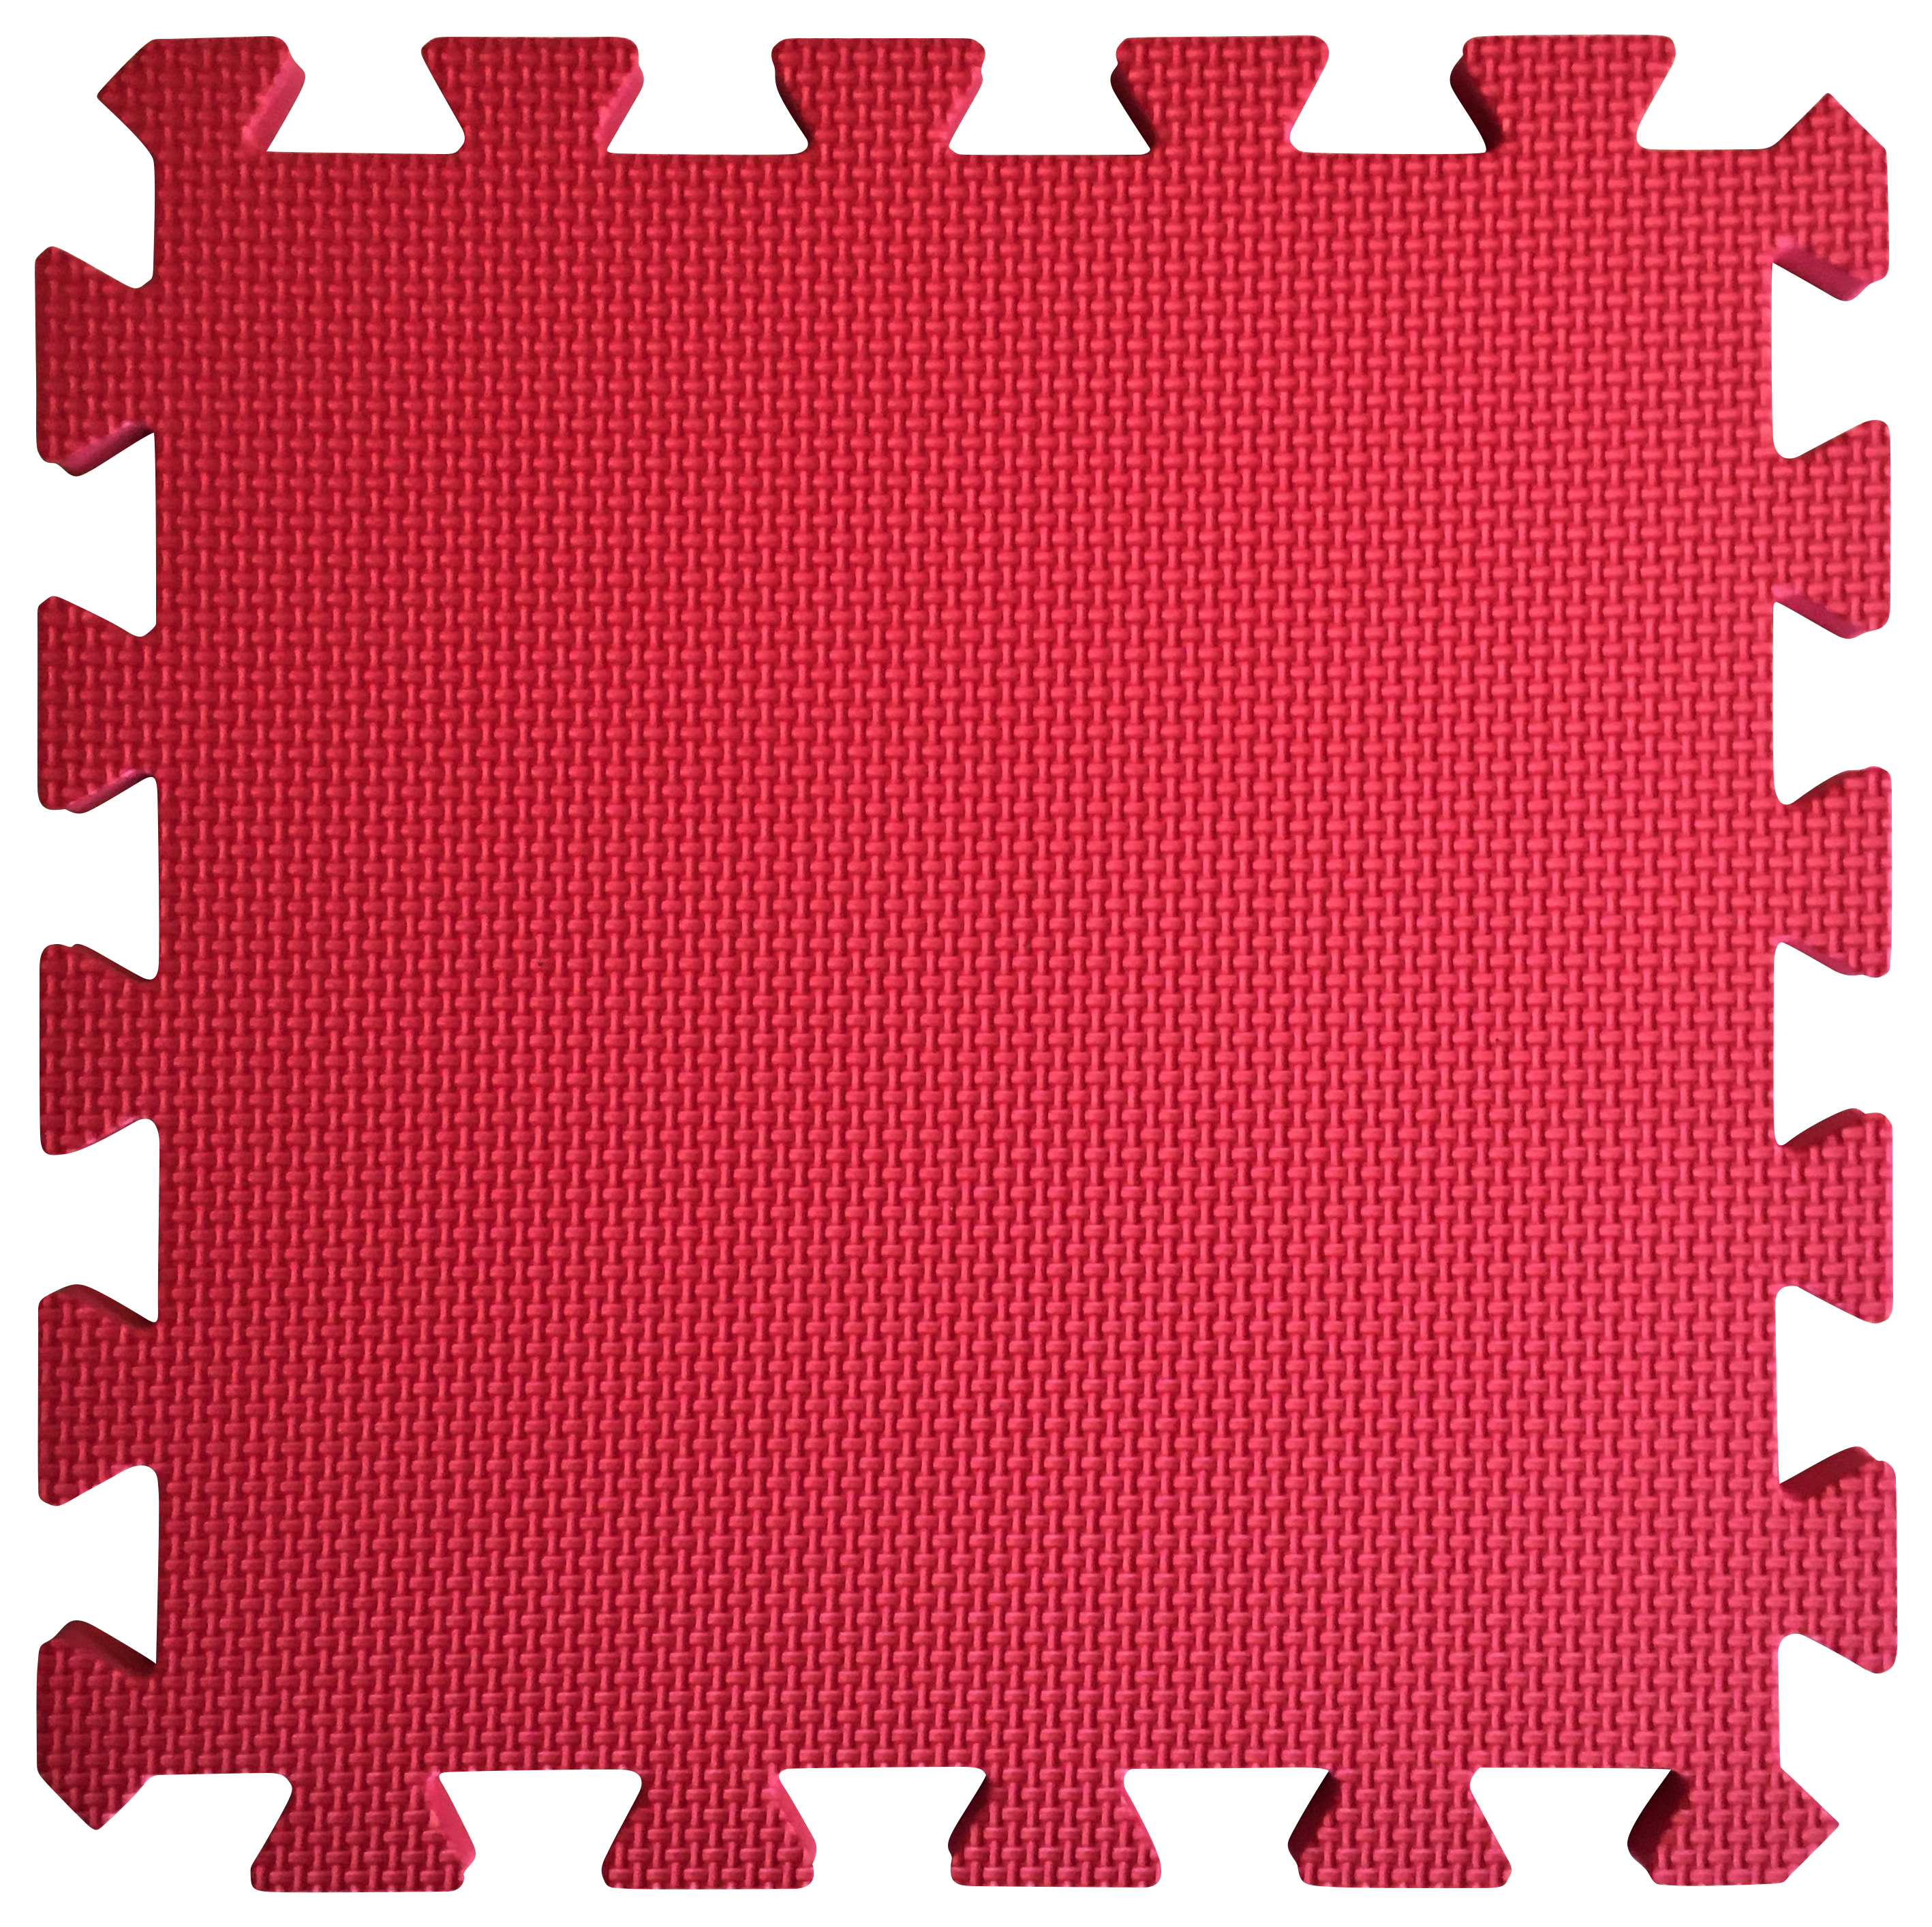 Image of Warm Floor Red Interlocking Floor Tiles for Garden Buildings - 6 x 5ft